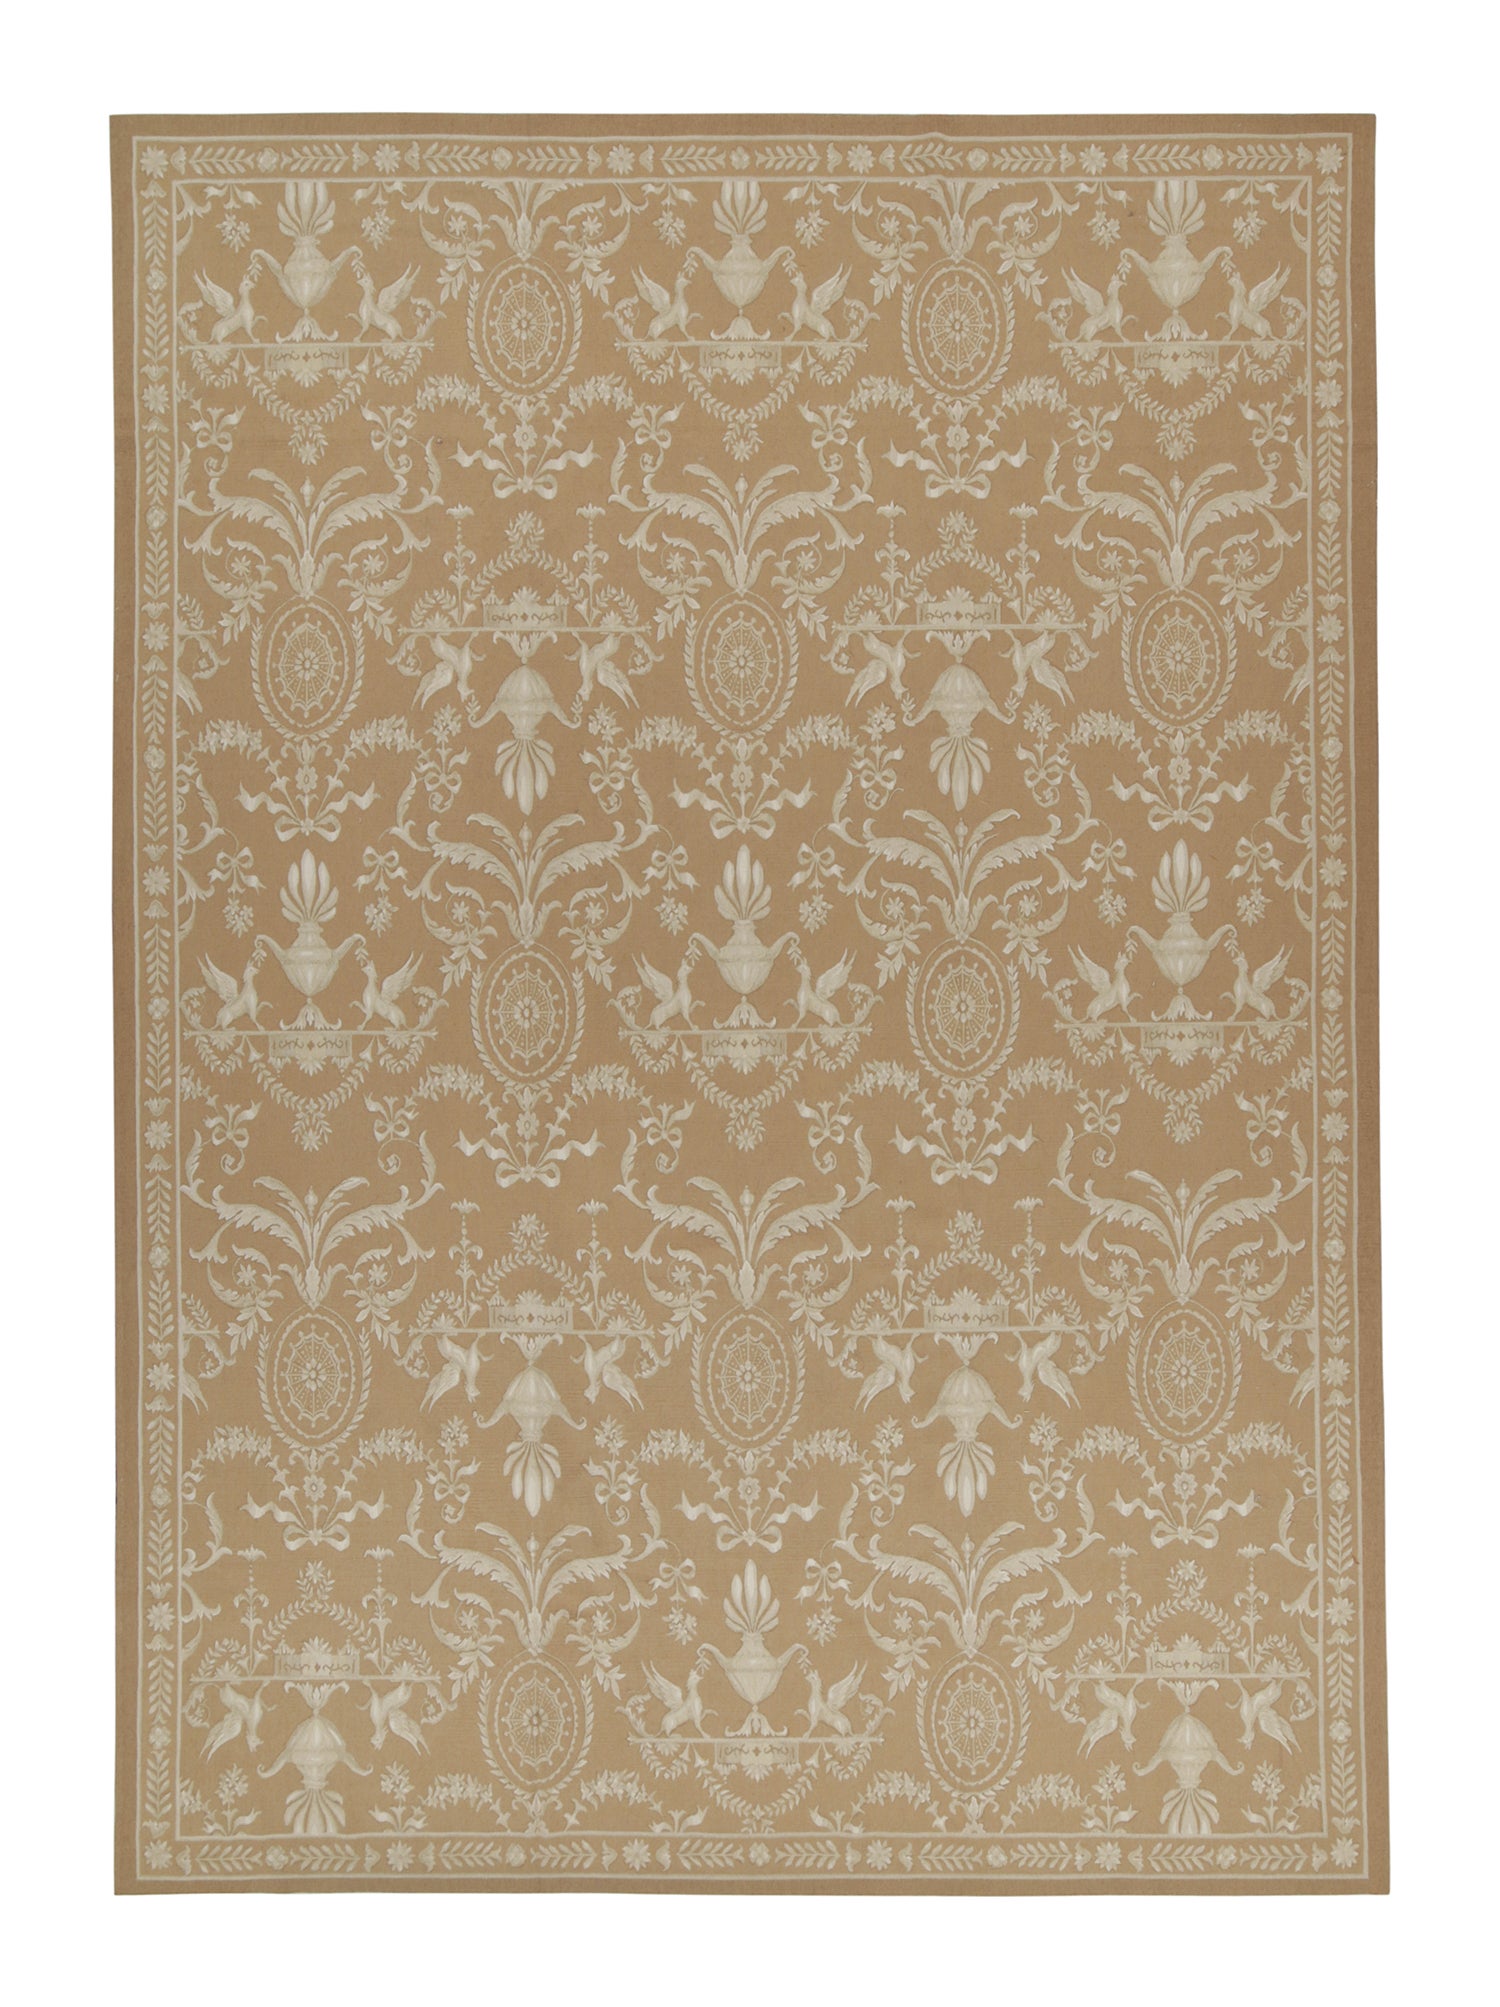 Rug & Kilims Flachgewebe im Aubusson-Stil aus dem 18. Jahrhundert in Brown mit weißem Muster